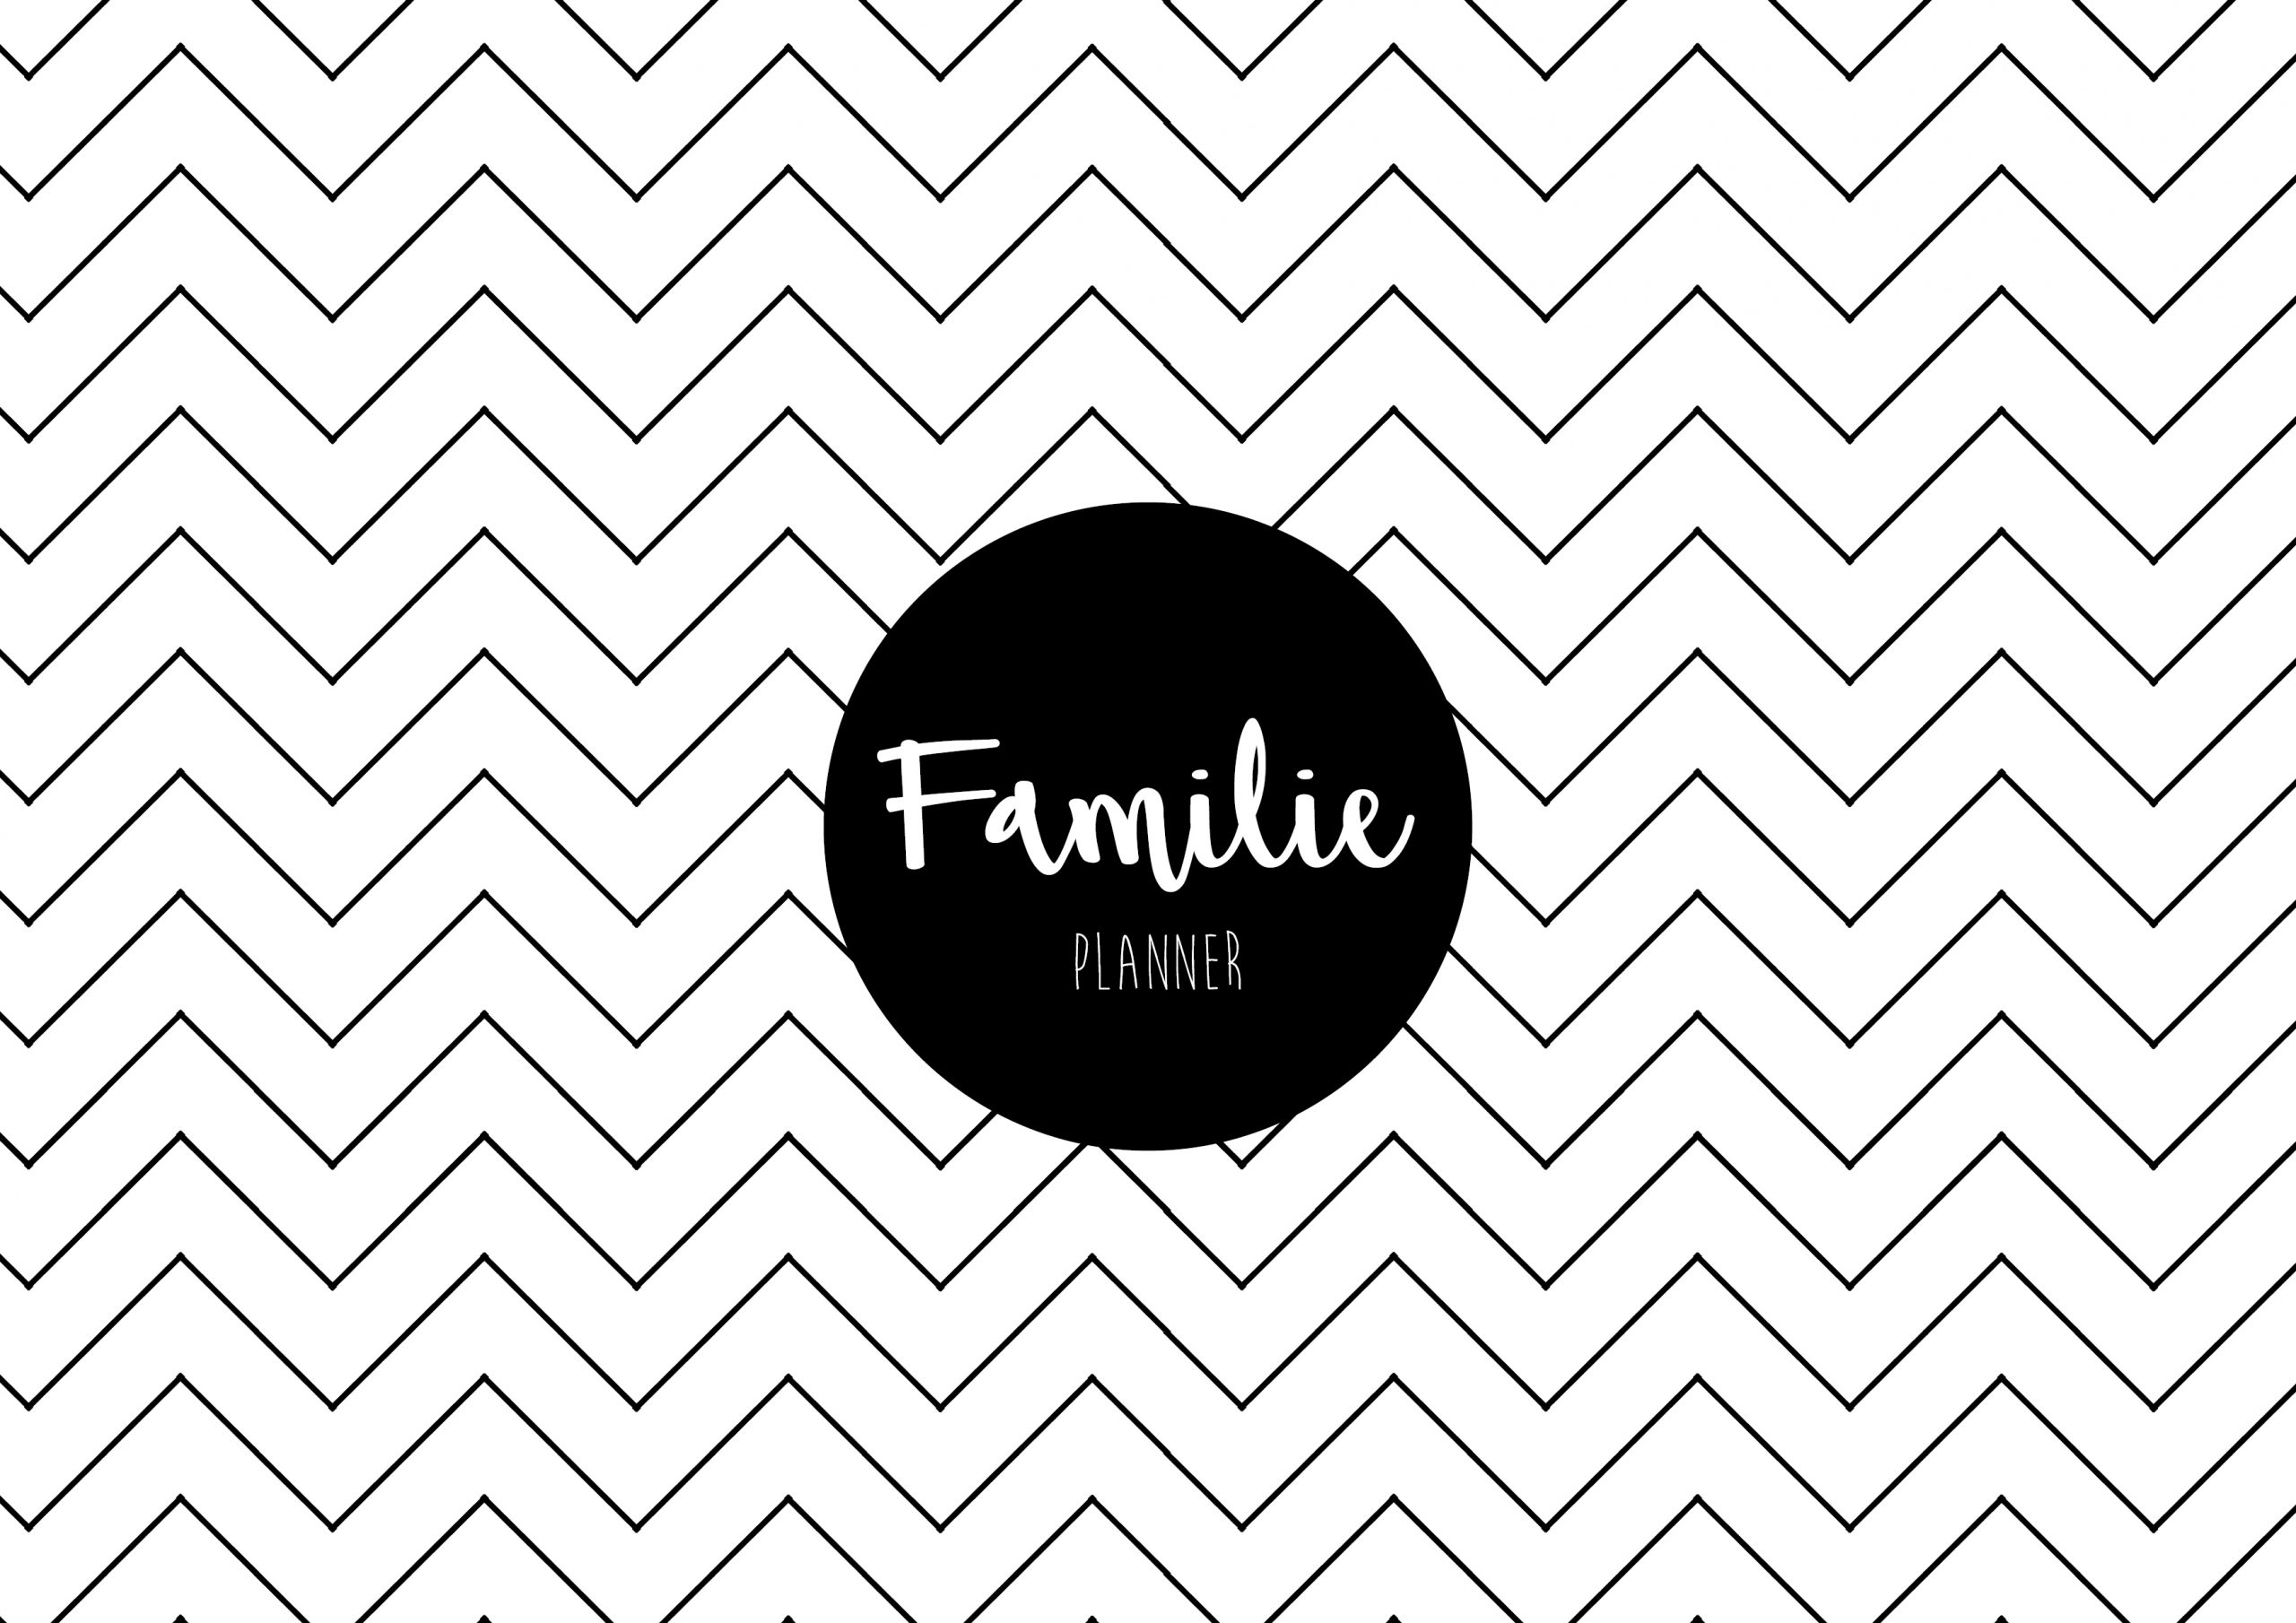 Familieplanner 2019 Sofie Lambrecht